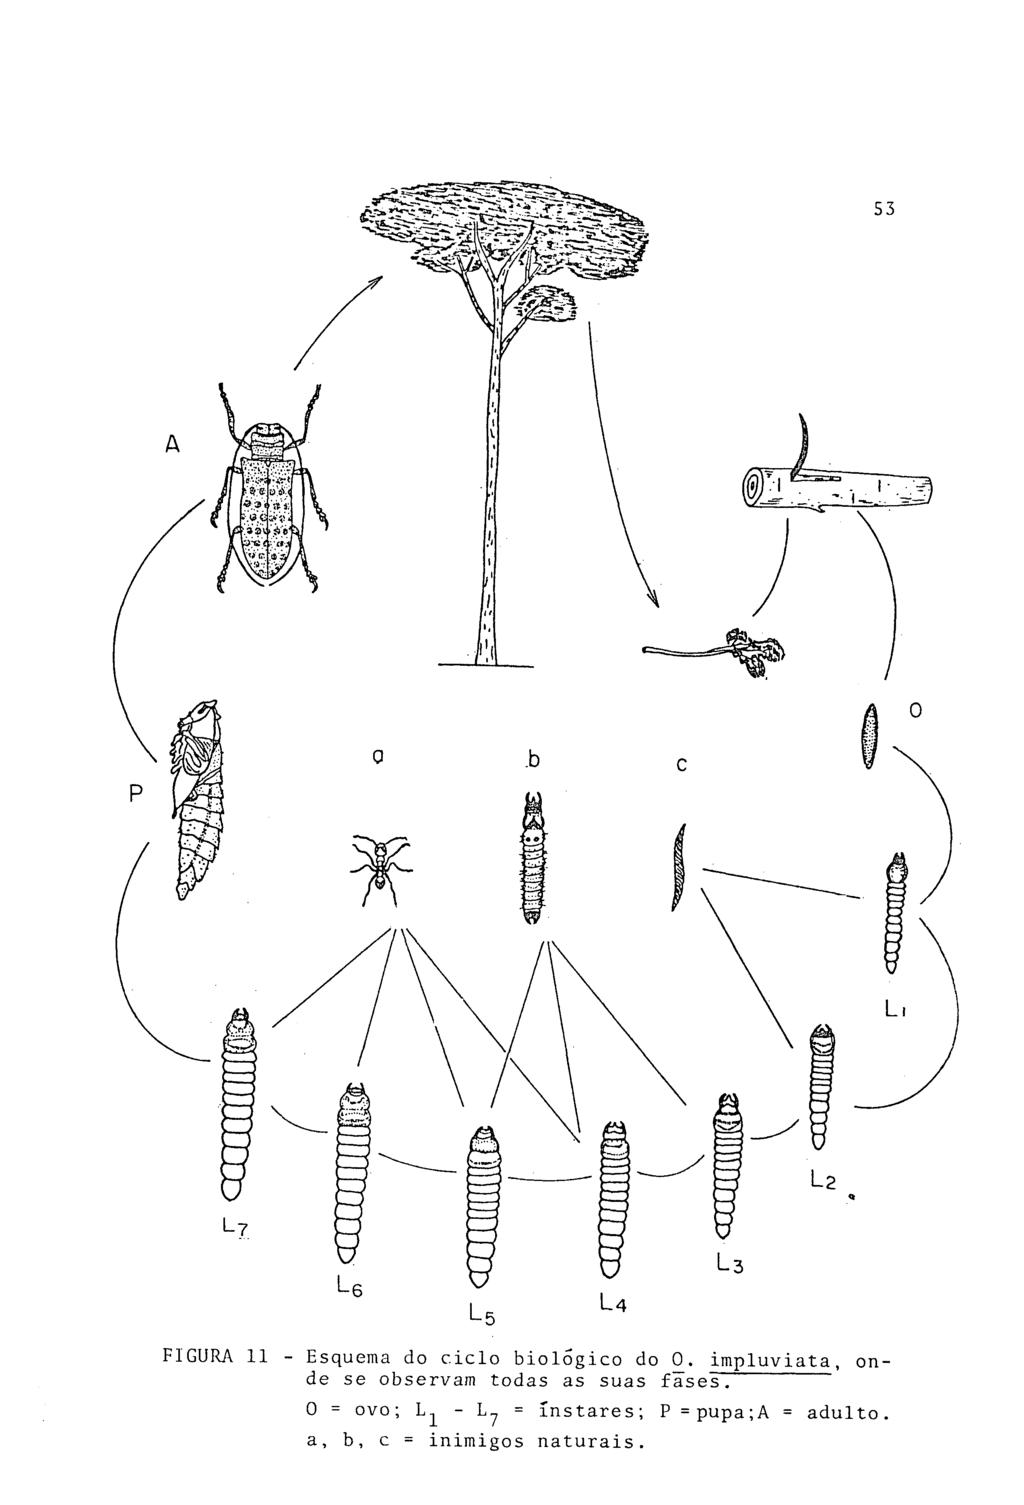 FIGURA 11 - Esquema do ciclo biológico do 0.